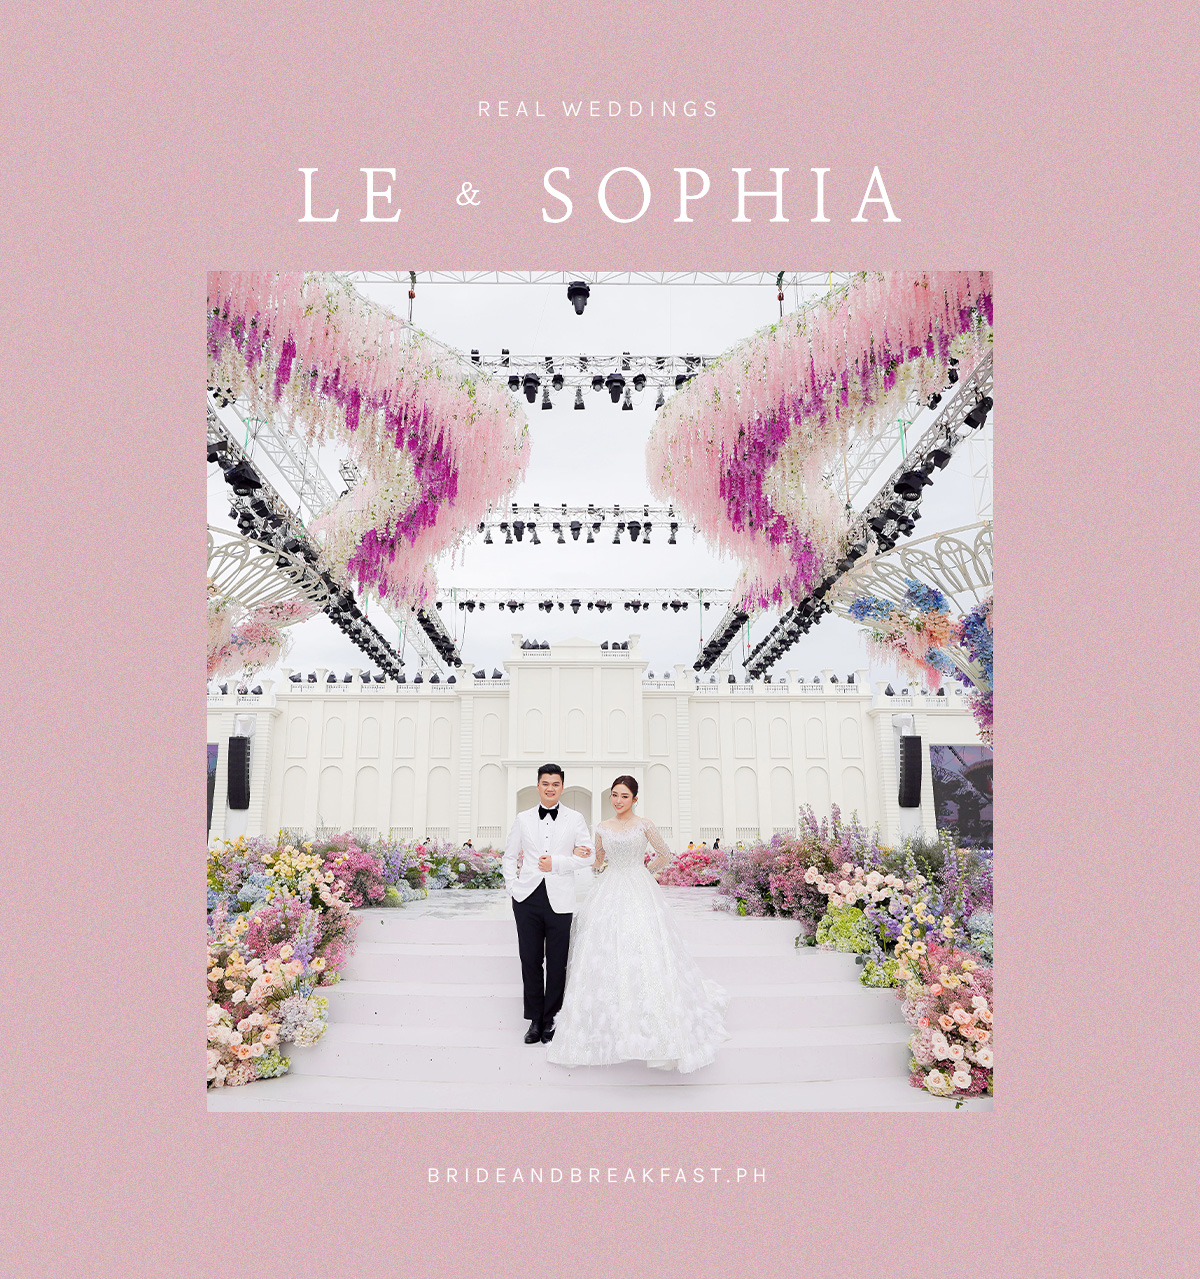 Le and Sophia